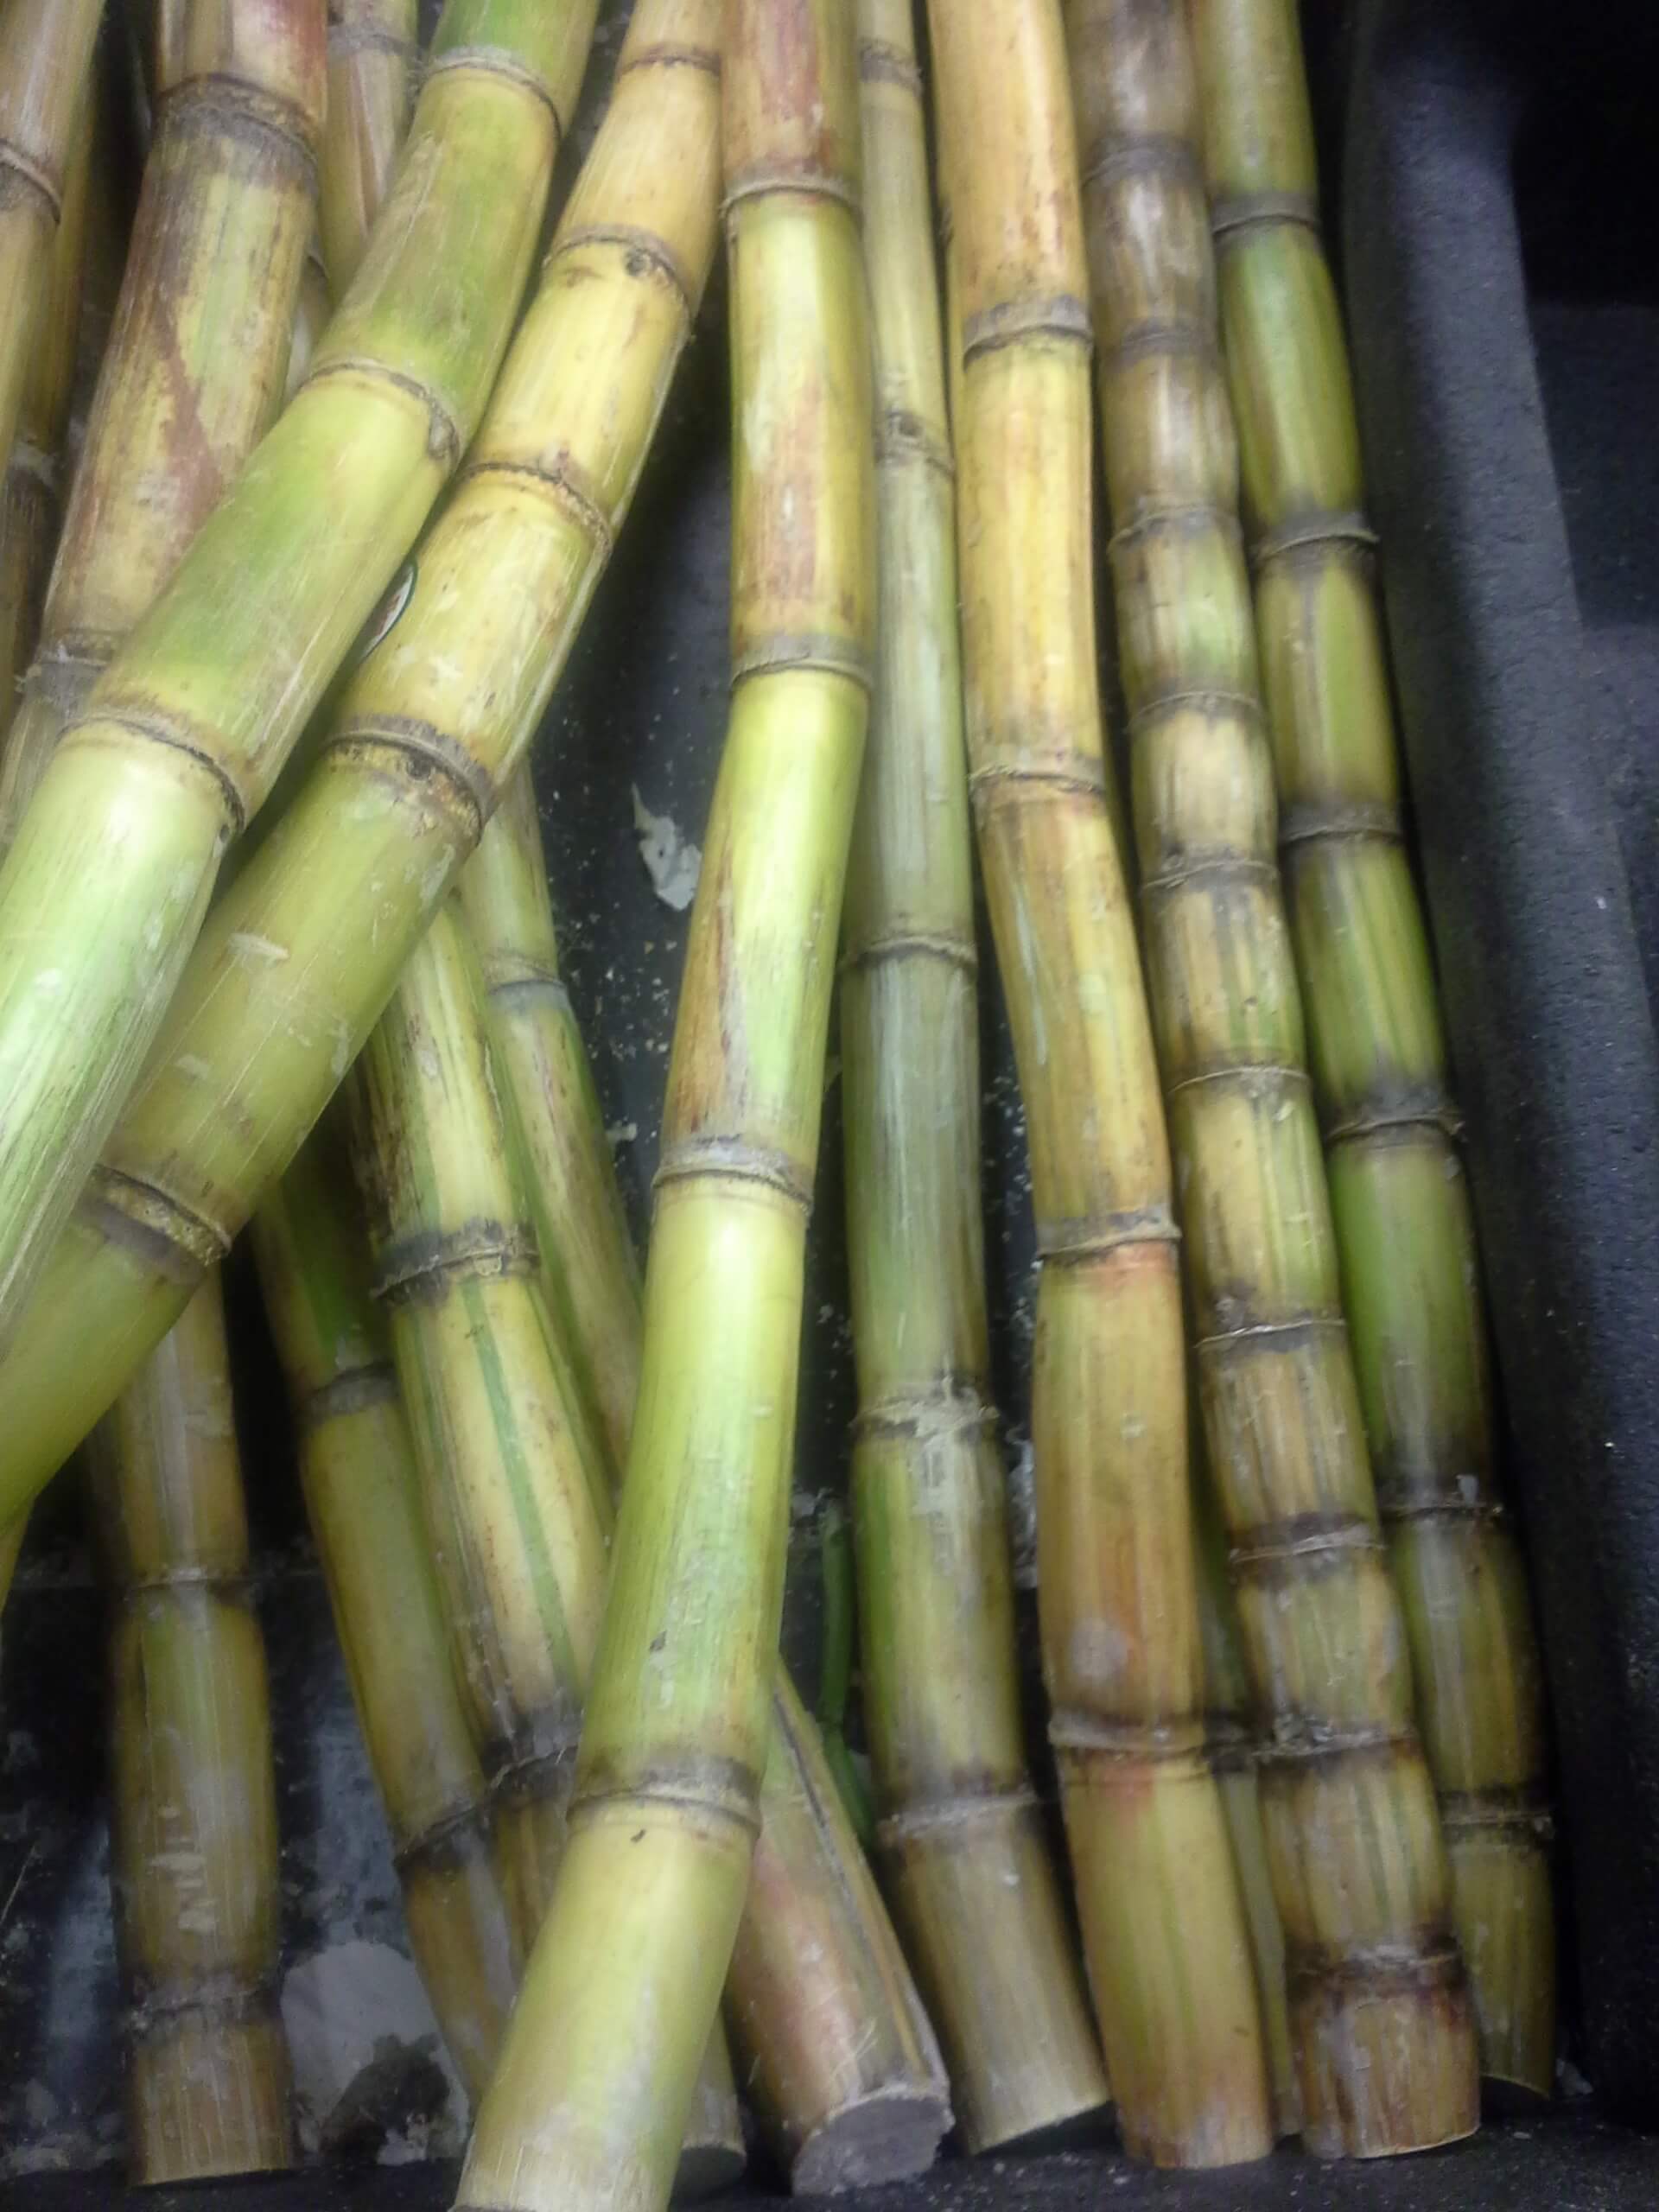 A closeup view of sugar cane stalks